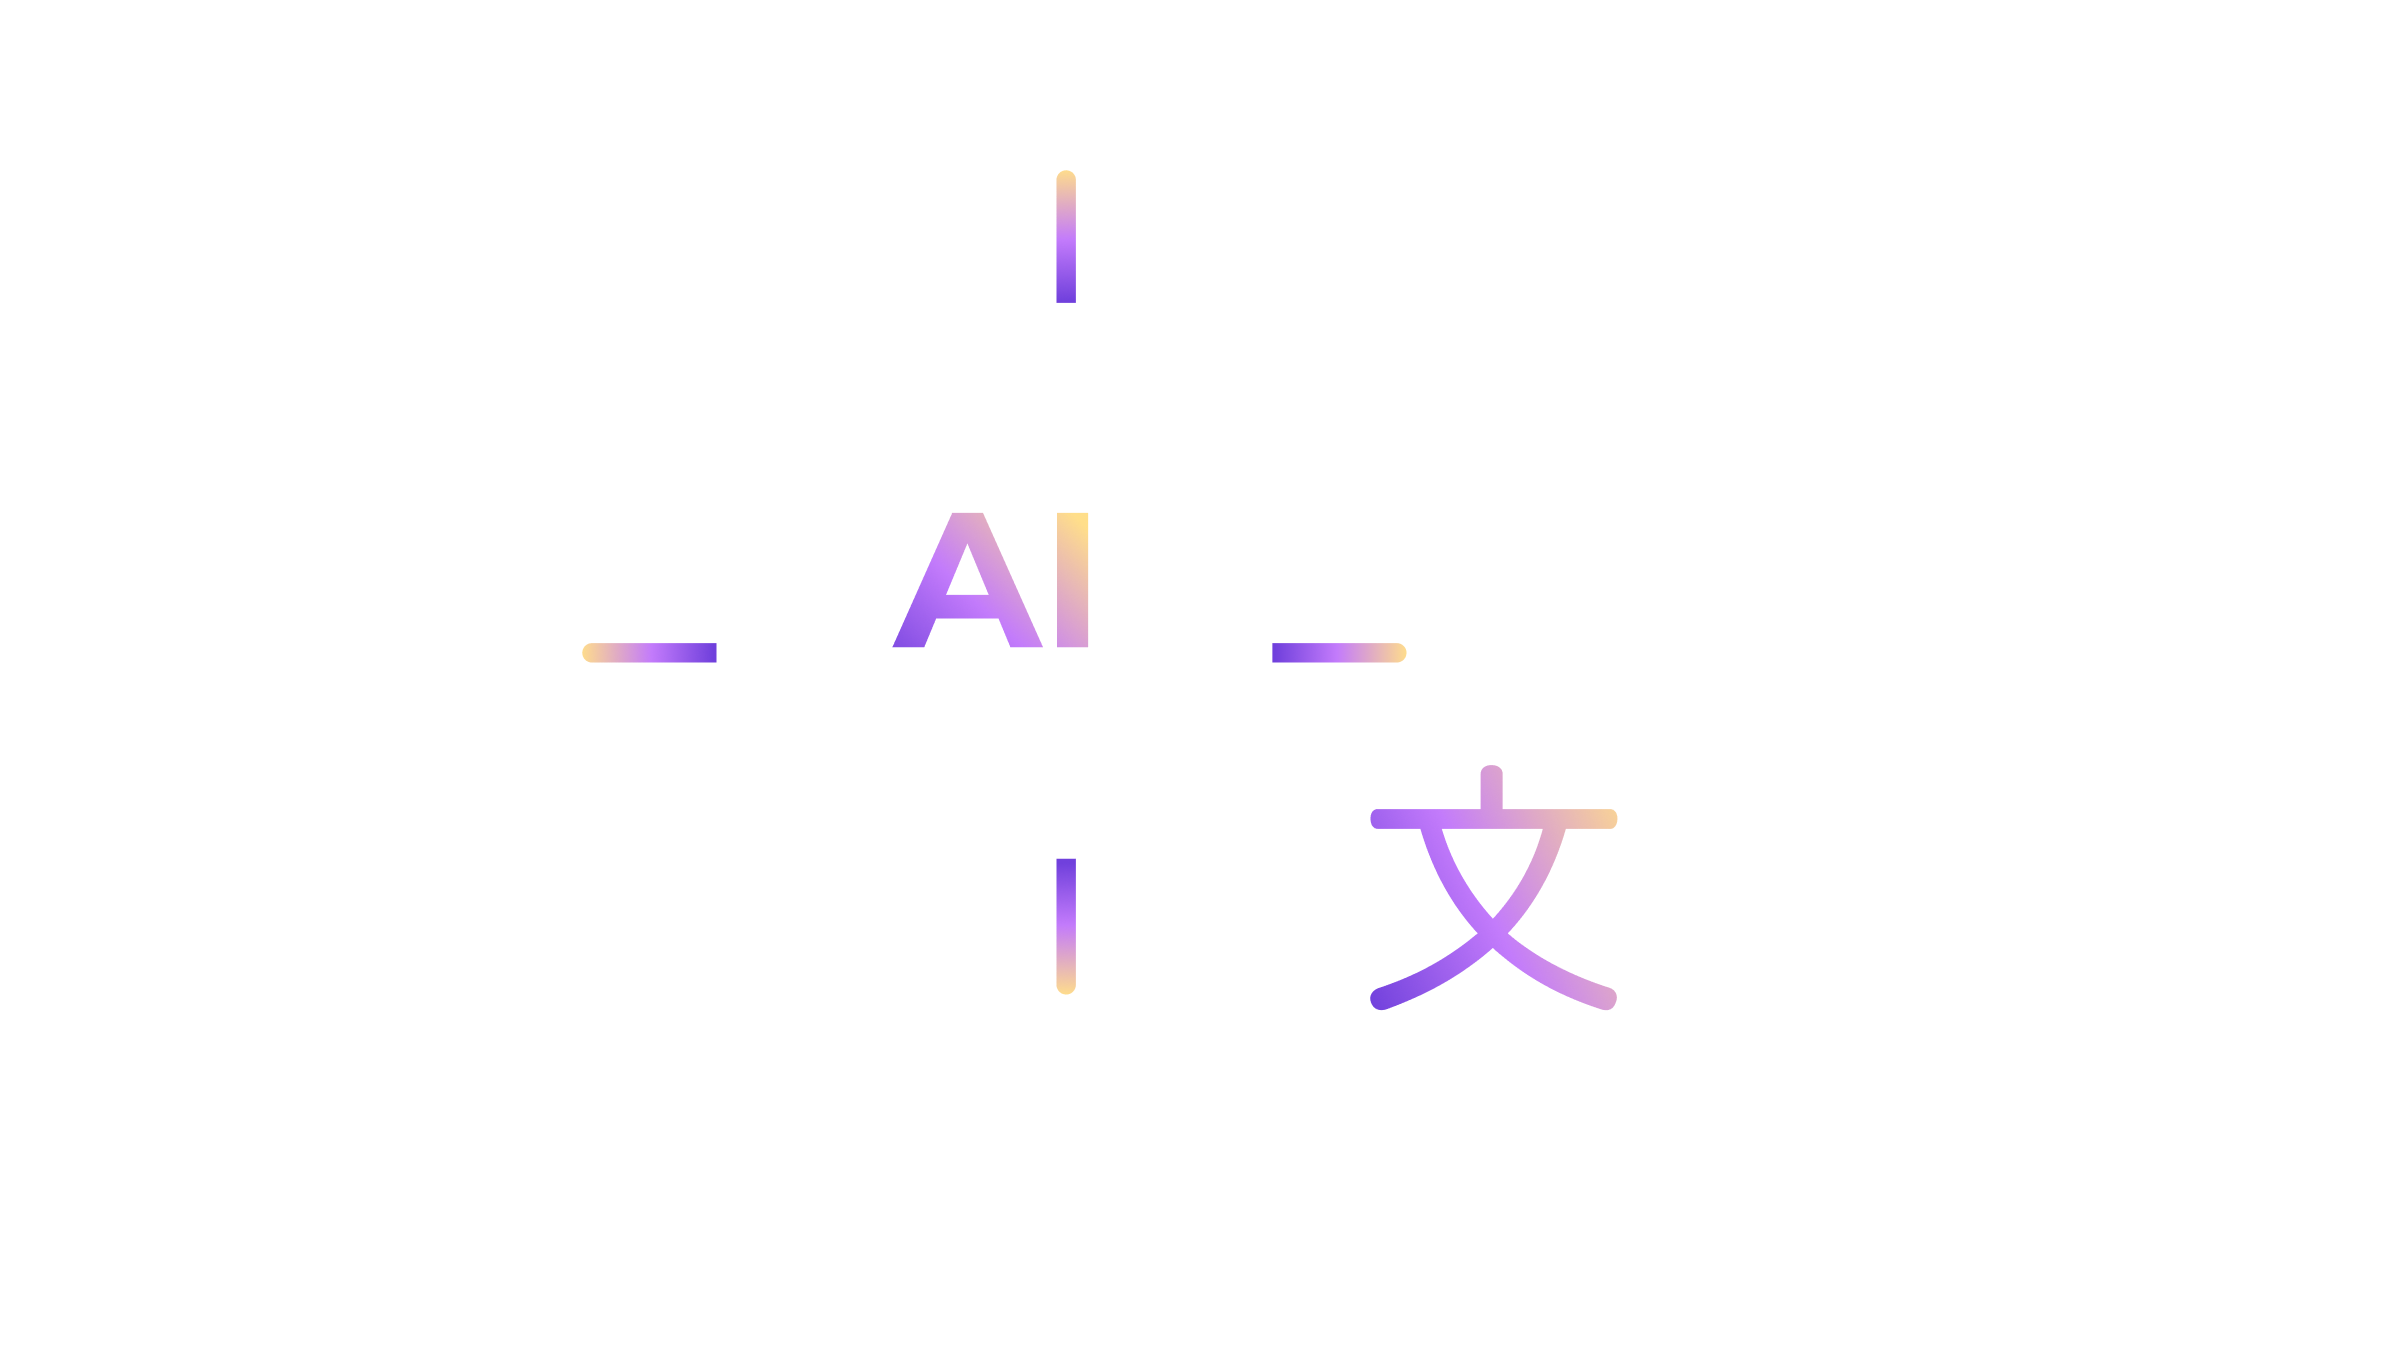 AI-Powered Human Translation